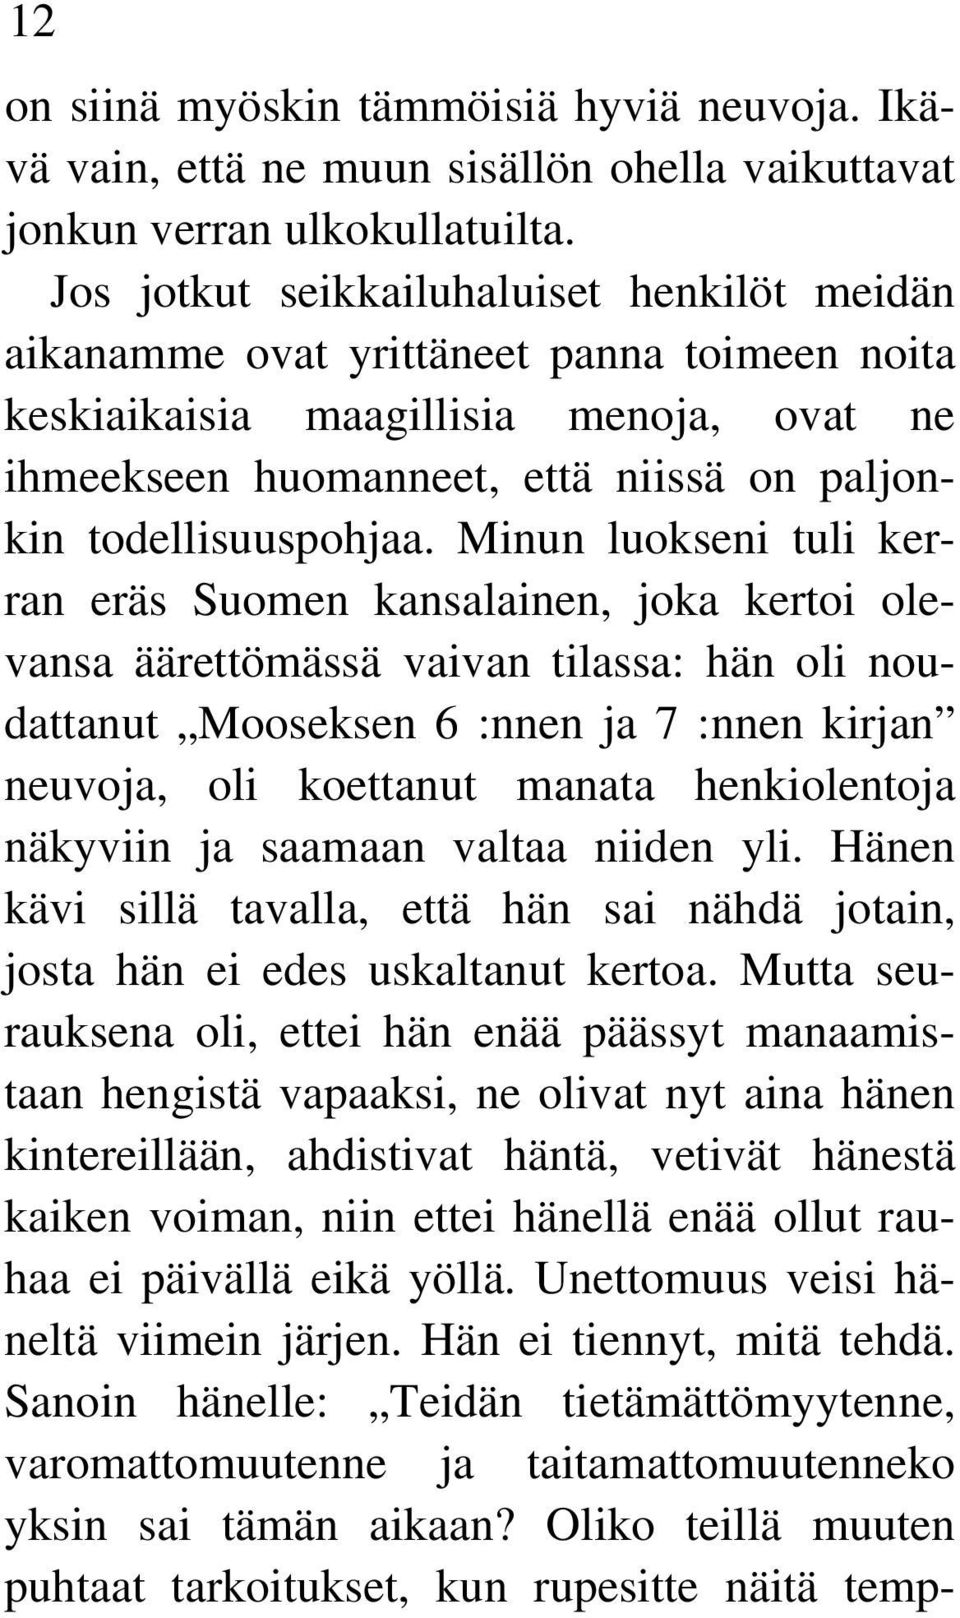 Minun luokseni tuli kerran eräs Suomen kansalainen, joka kertoi olevansa äärettömässä vaivan tilassa: hän oli noudattanut Mooseksen 6 :nnen ja 7 :nnen kirjan neuvoja, oli koettanut manata